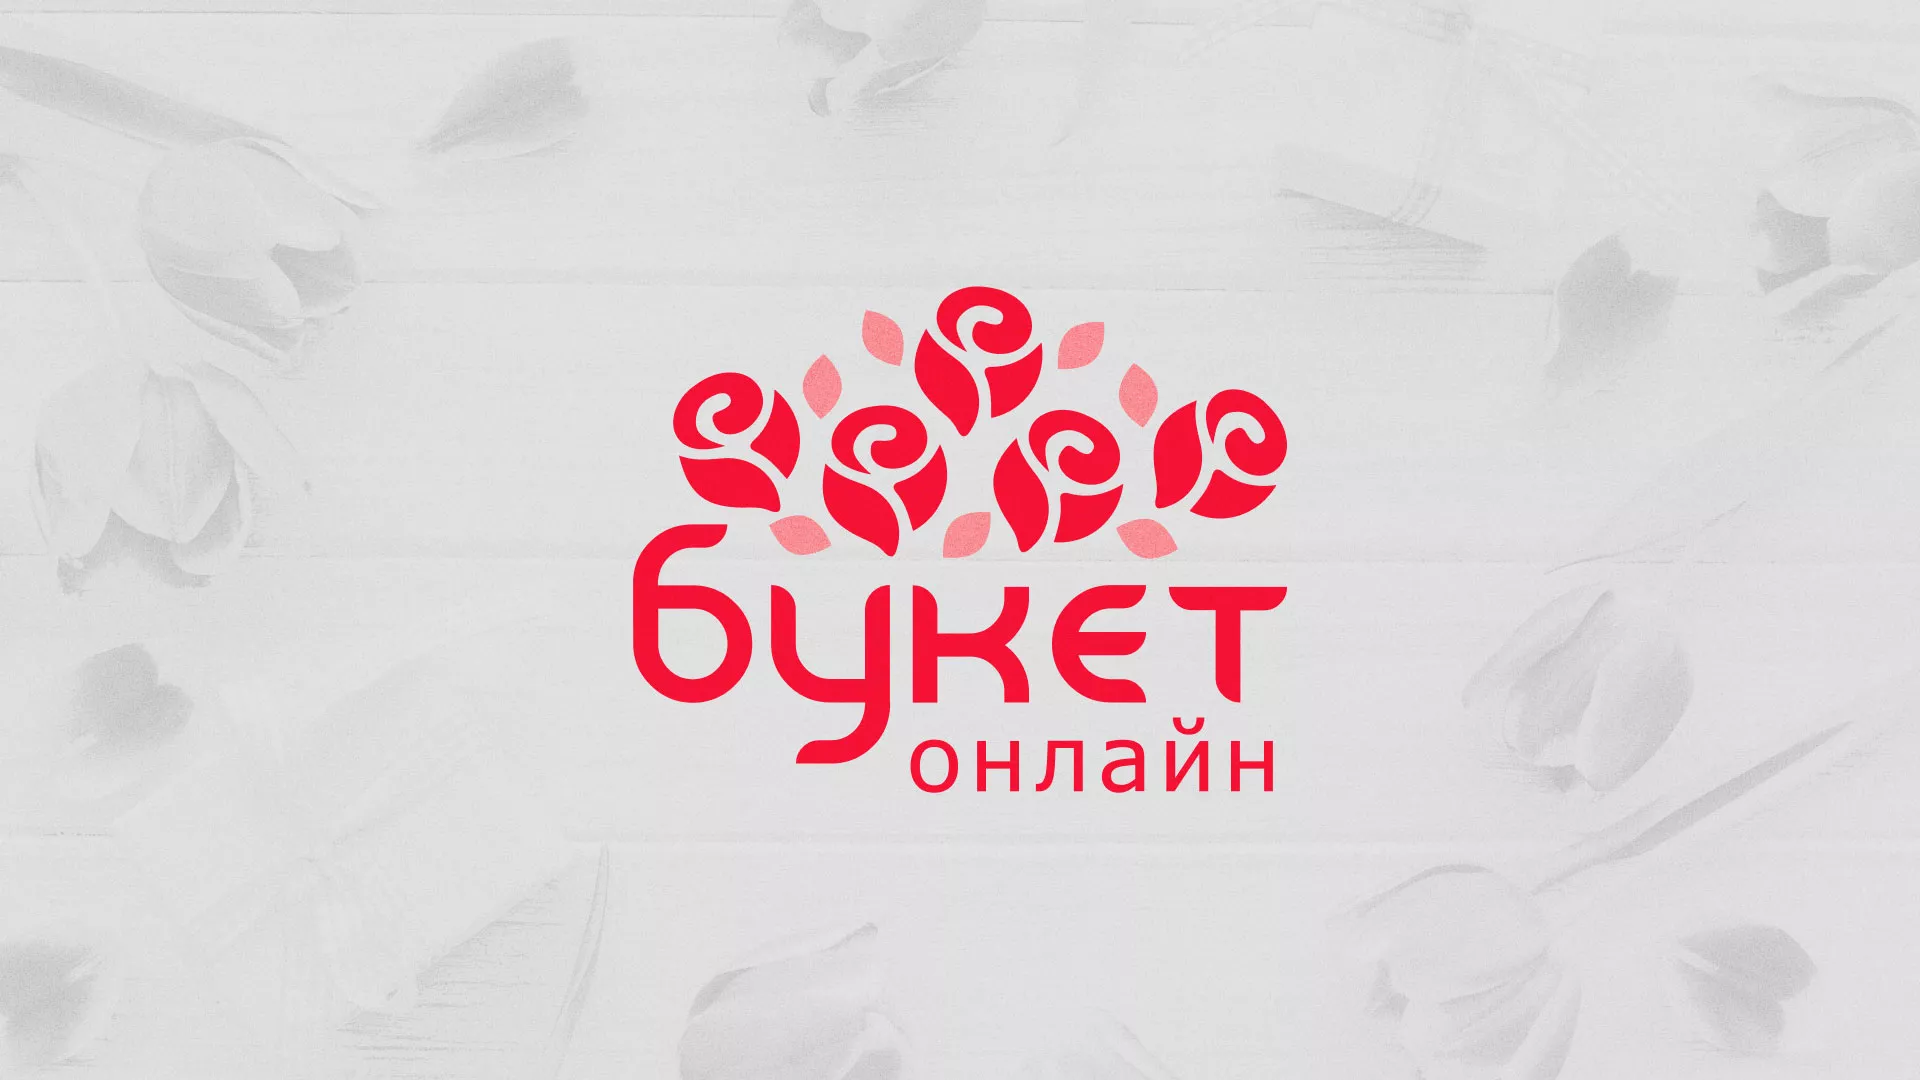 Создание интернет-магазина «Букет-онлайн» по цветам в Кувшиново